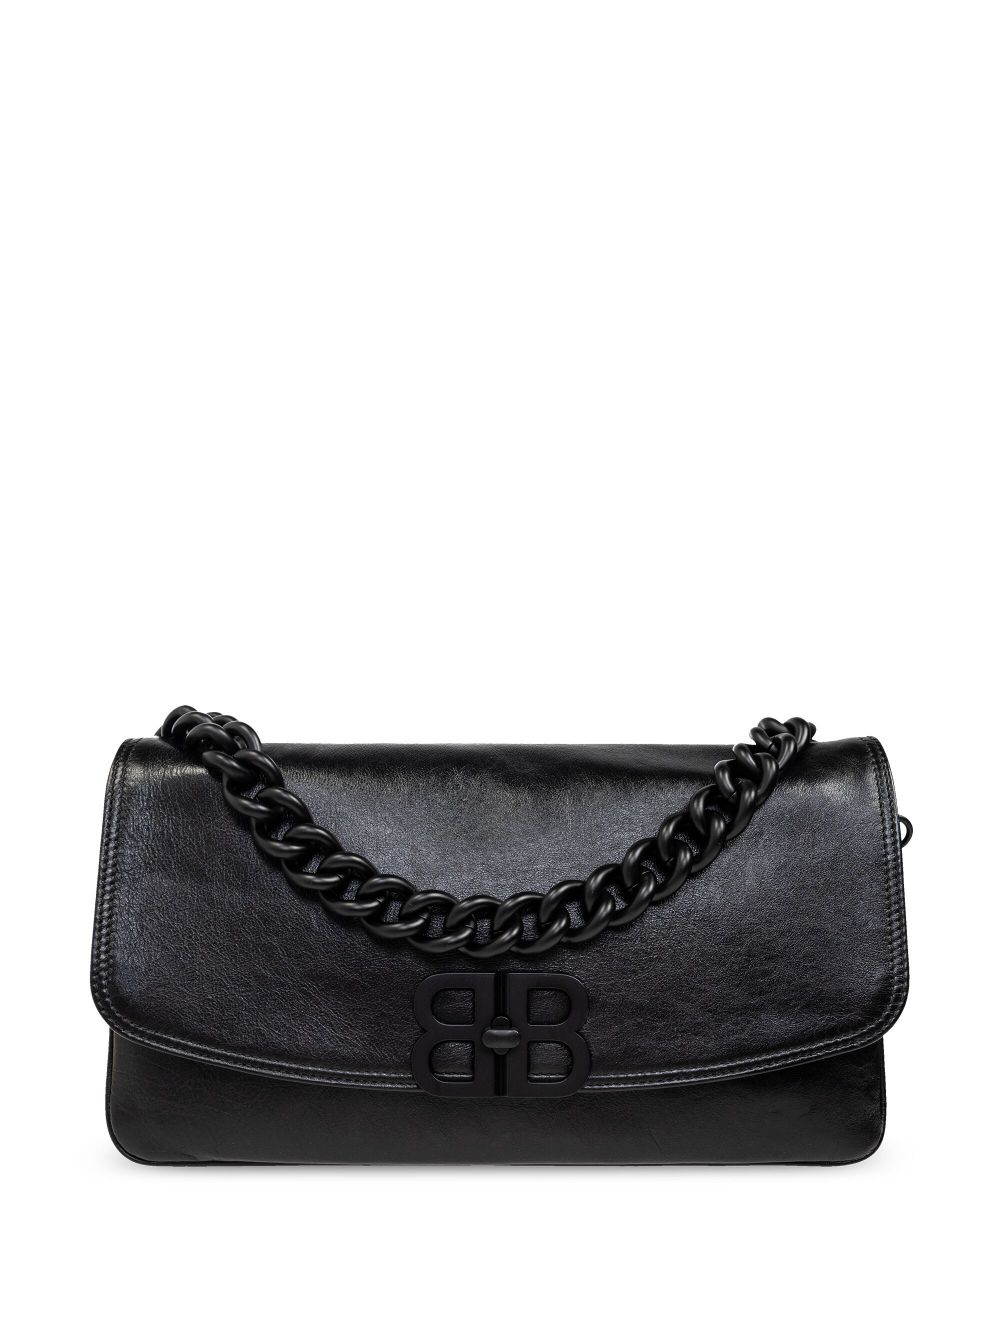 Balenciaga Medium Bb Leather Shoulder Bag In Black